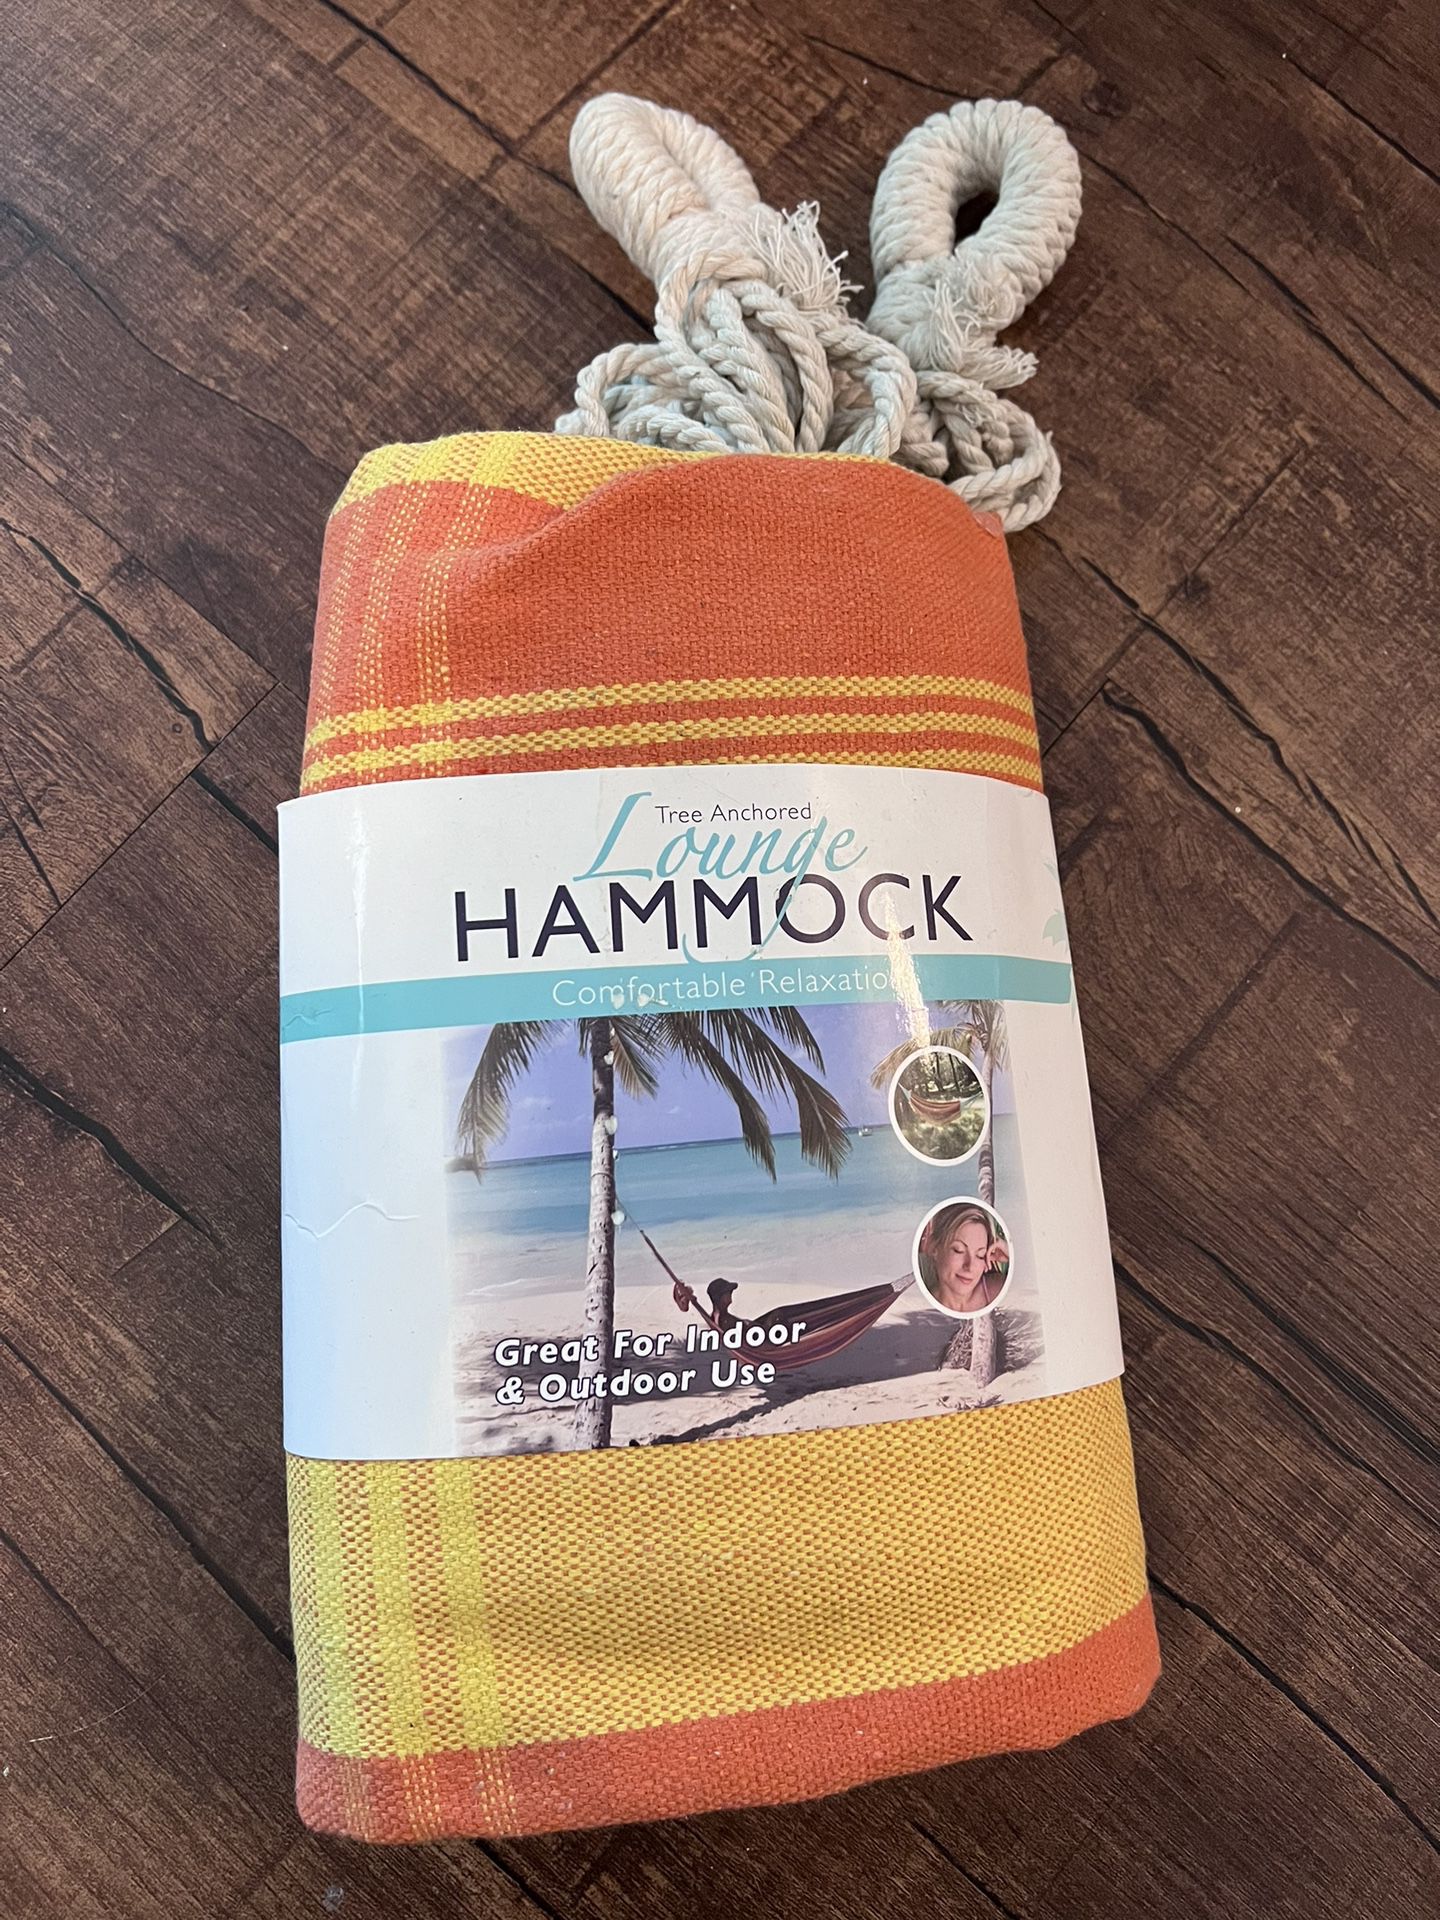 Brand New Hammock in Bag